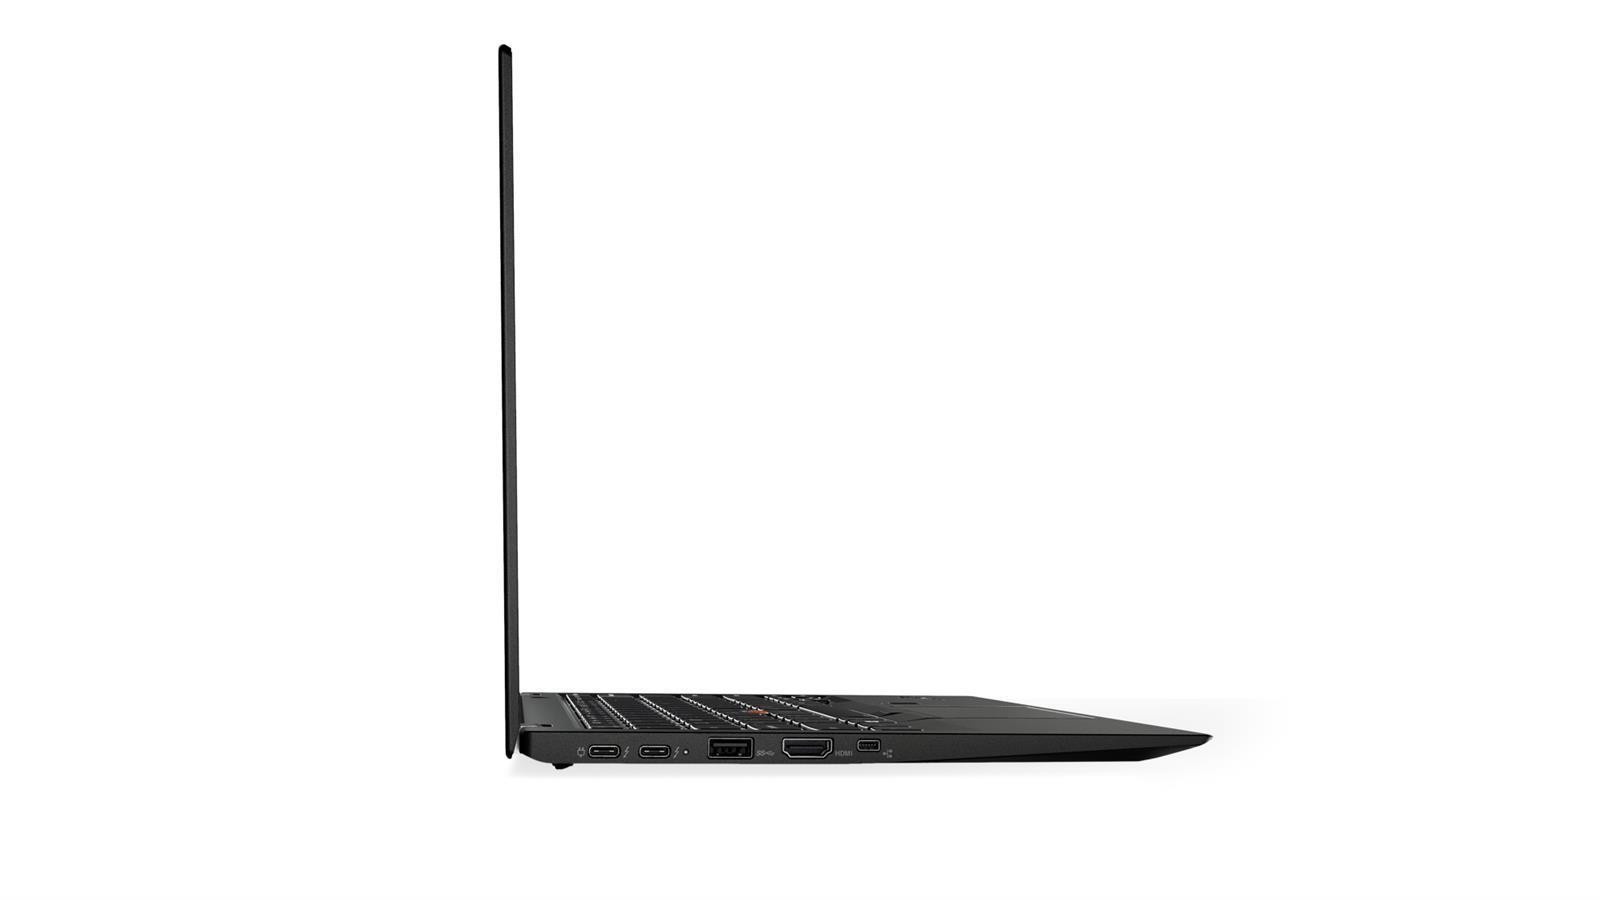 Lenovo ThinkPad X1 Carbon 2017 (5.Gen) 14" Full HD IPS, Core i5-7200U, 8GB, 256GB SSD, Win10Pro